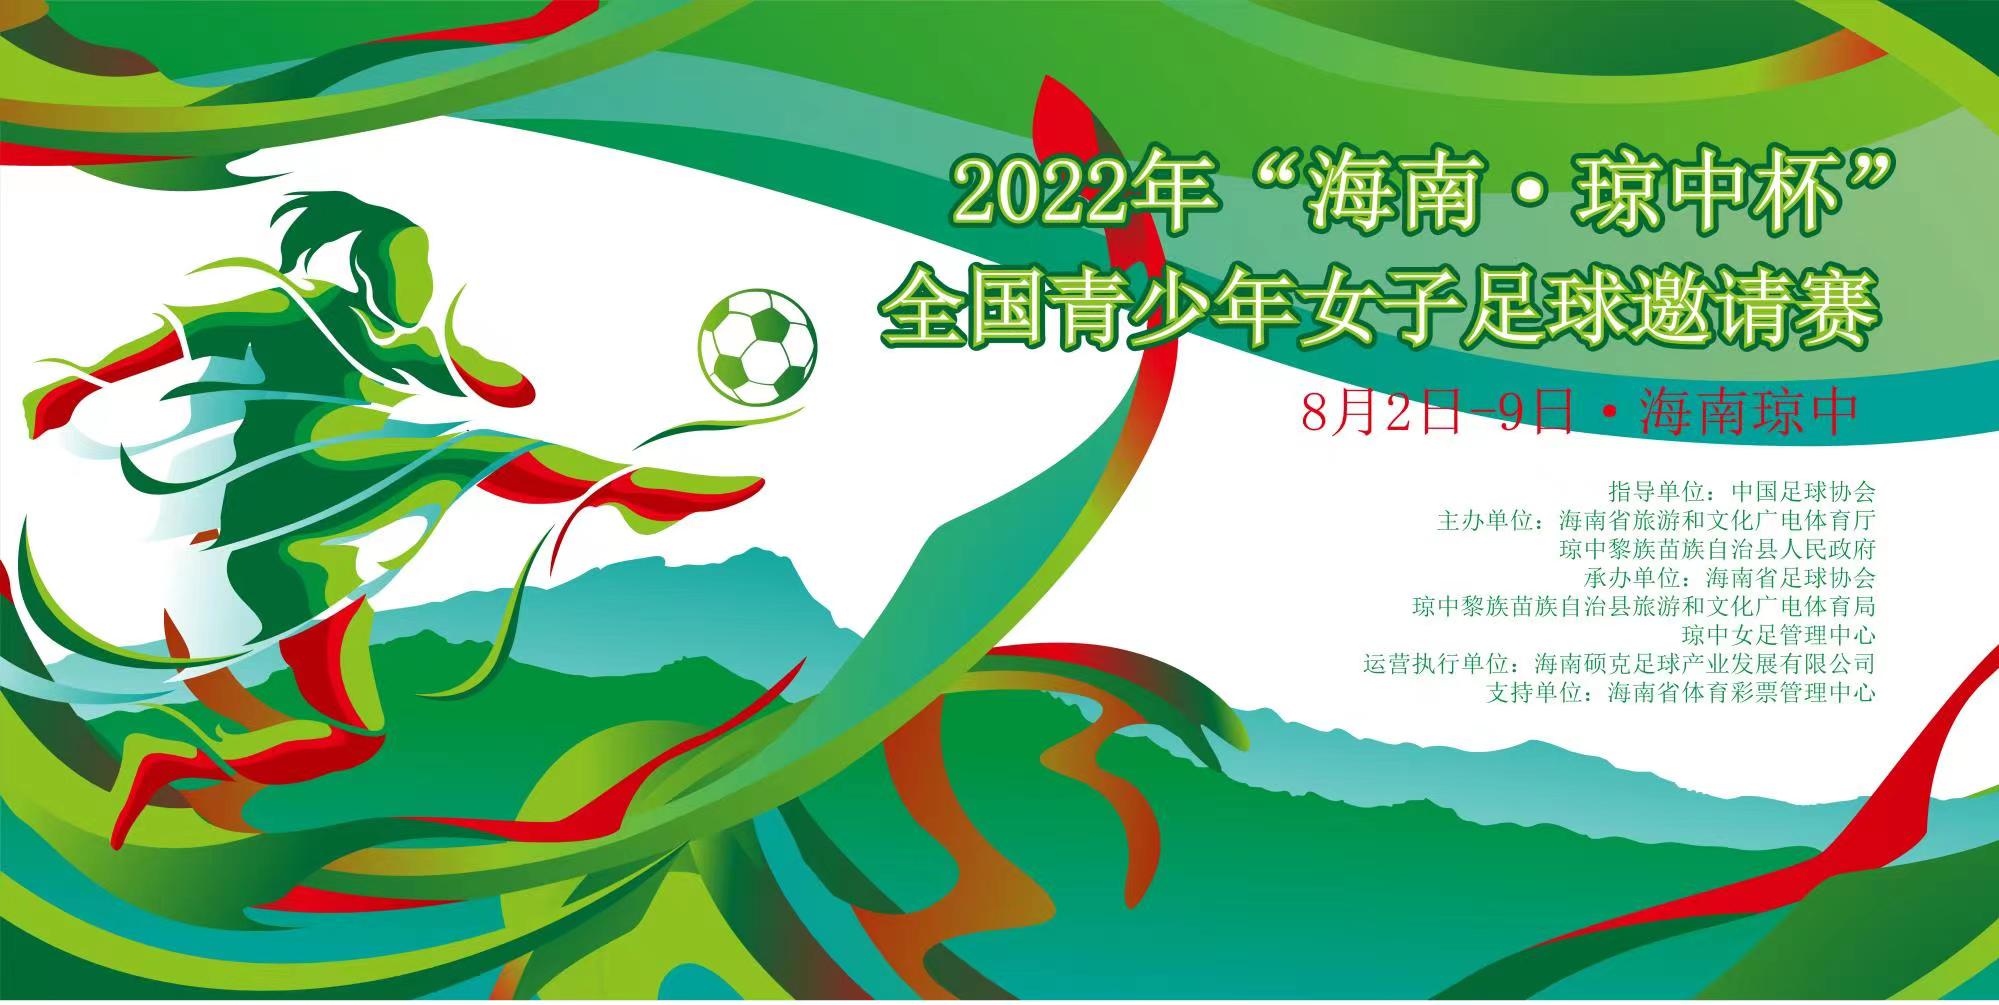 2022年“海南·琼中杯”全国青少年女子足球邀请赛决赛